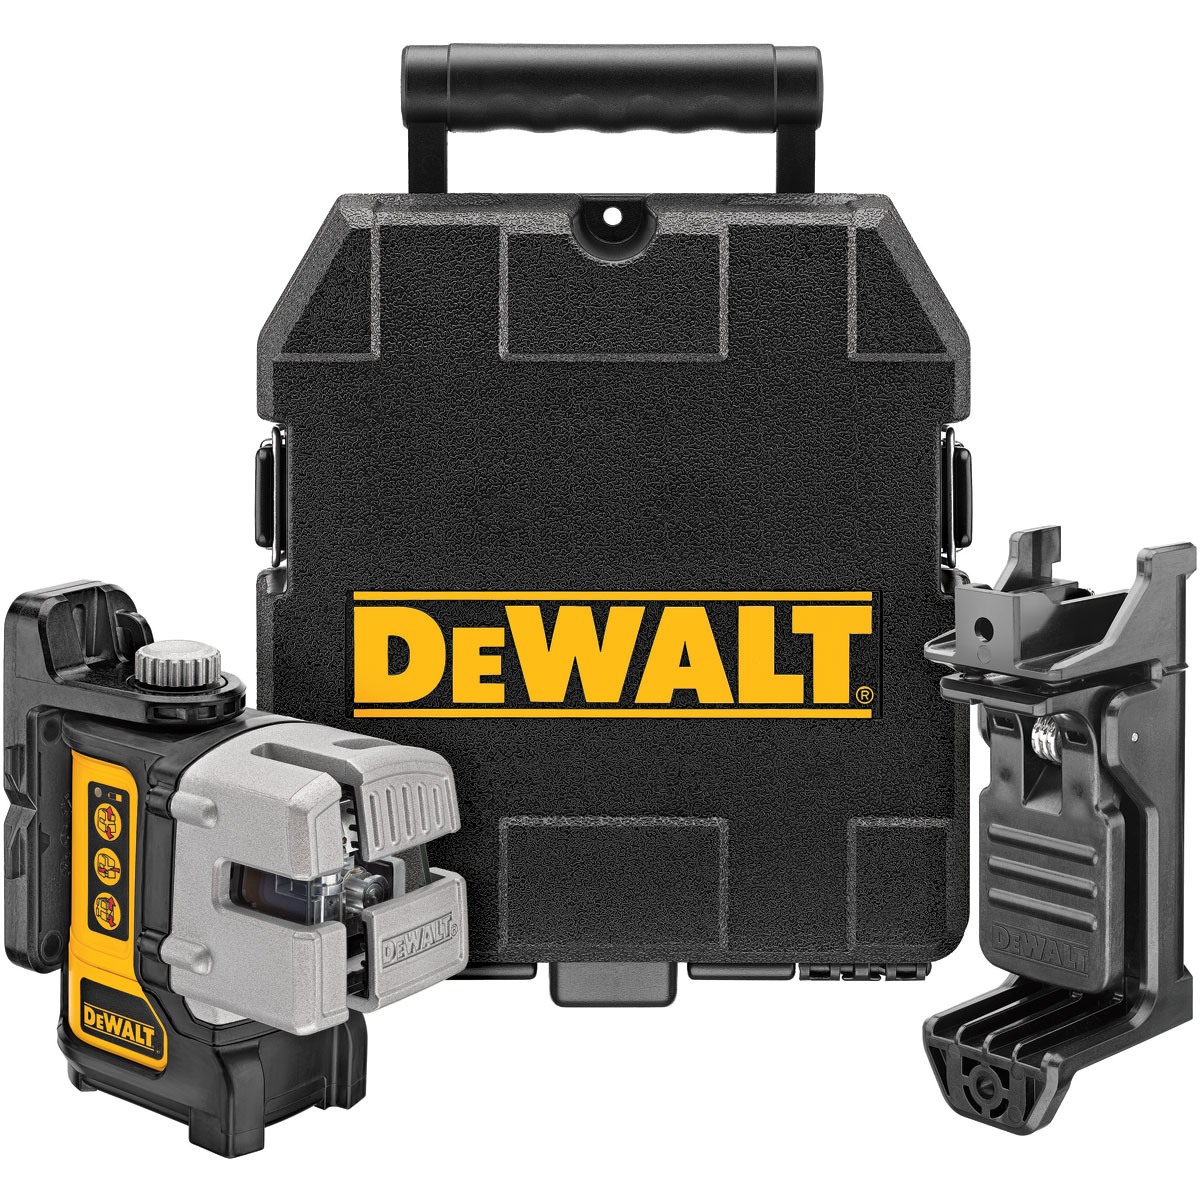 Nivela laser DeWalt multilinie – DW089K yalco.ro